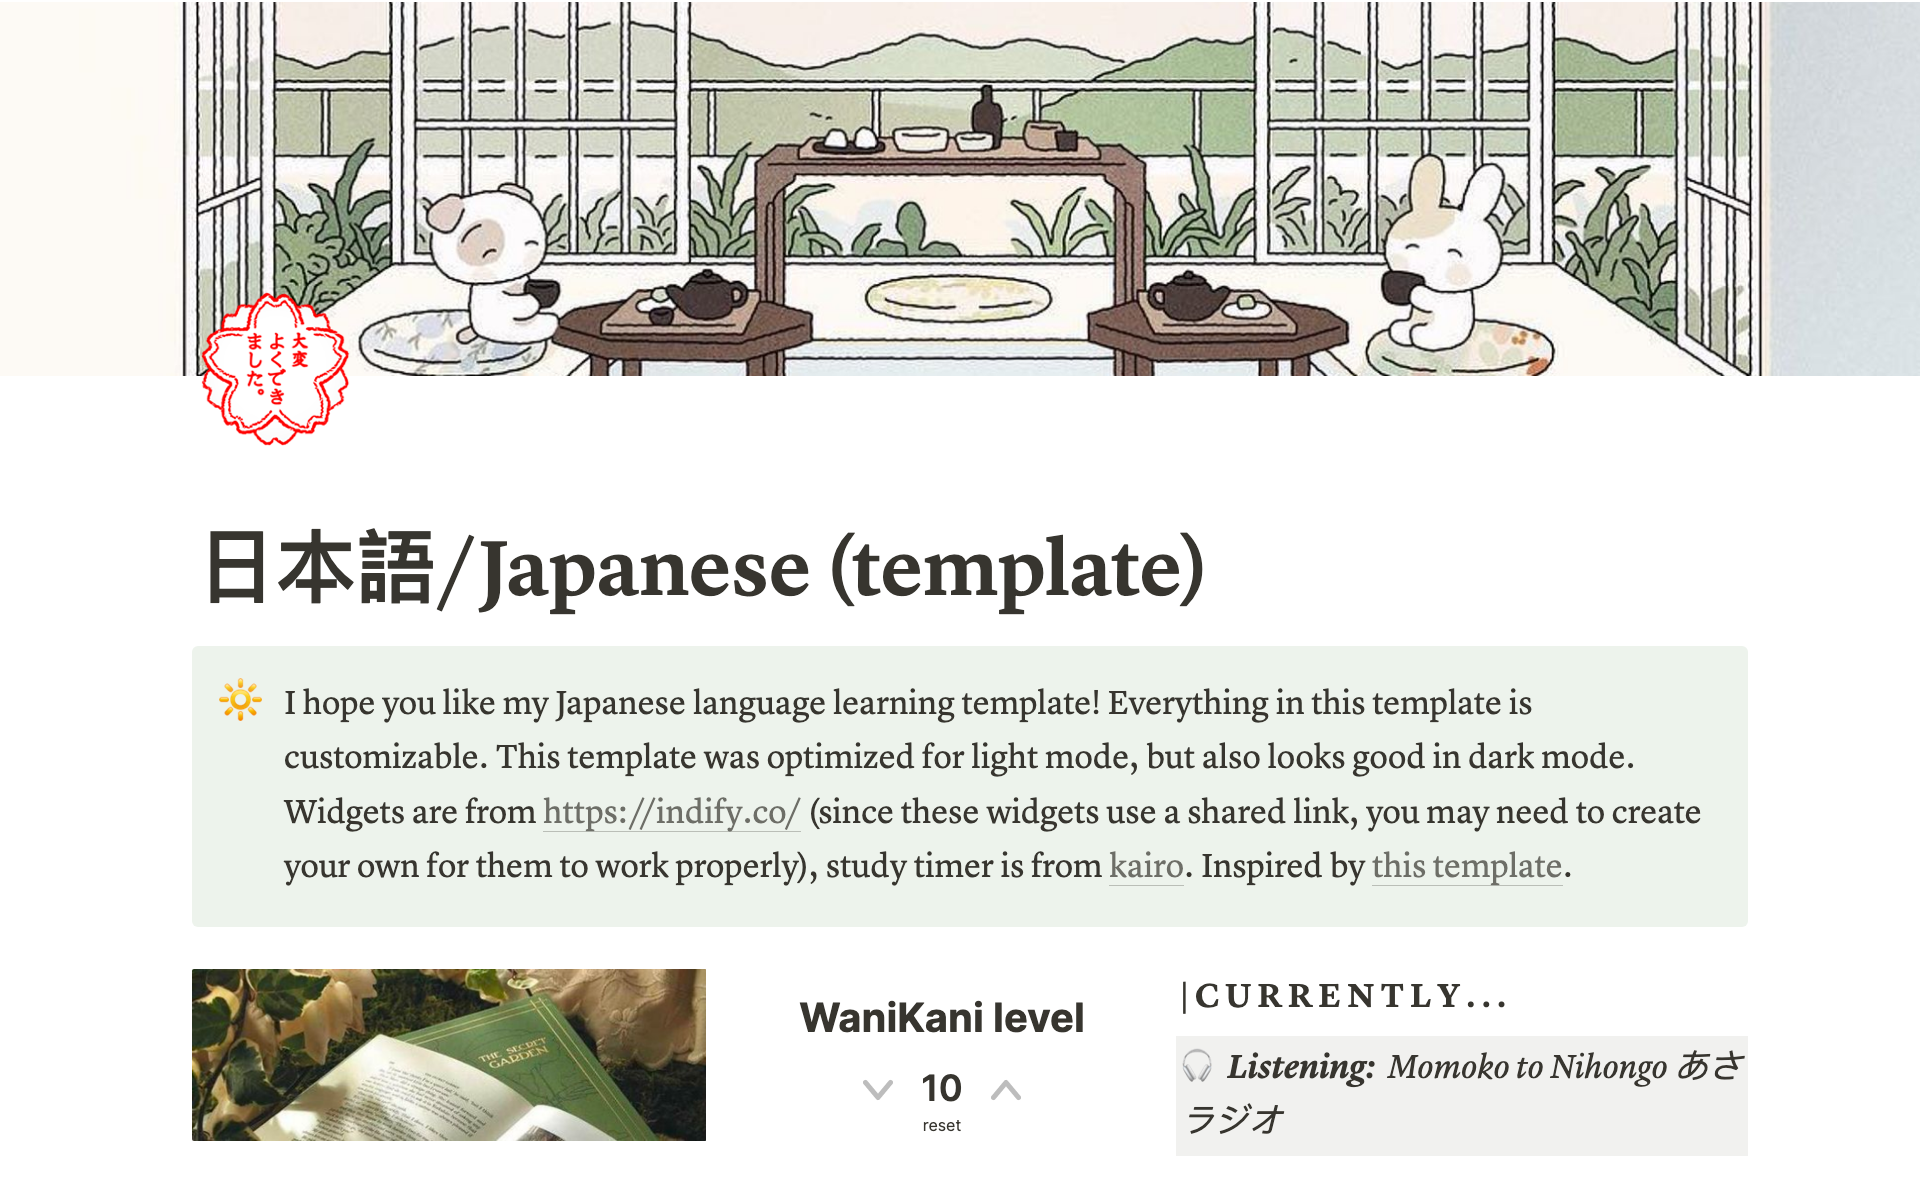 Vista previa de una plantilla para Japanese language learning